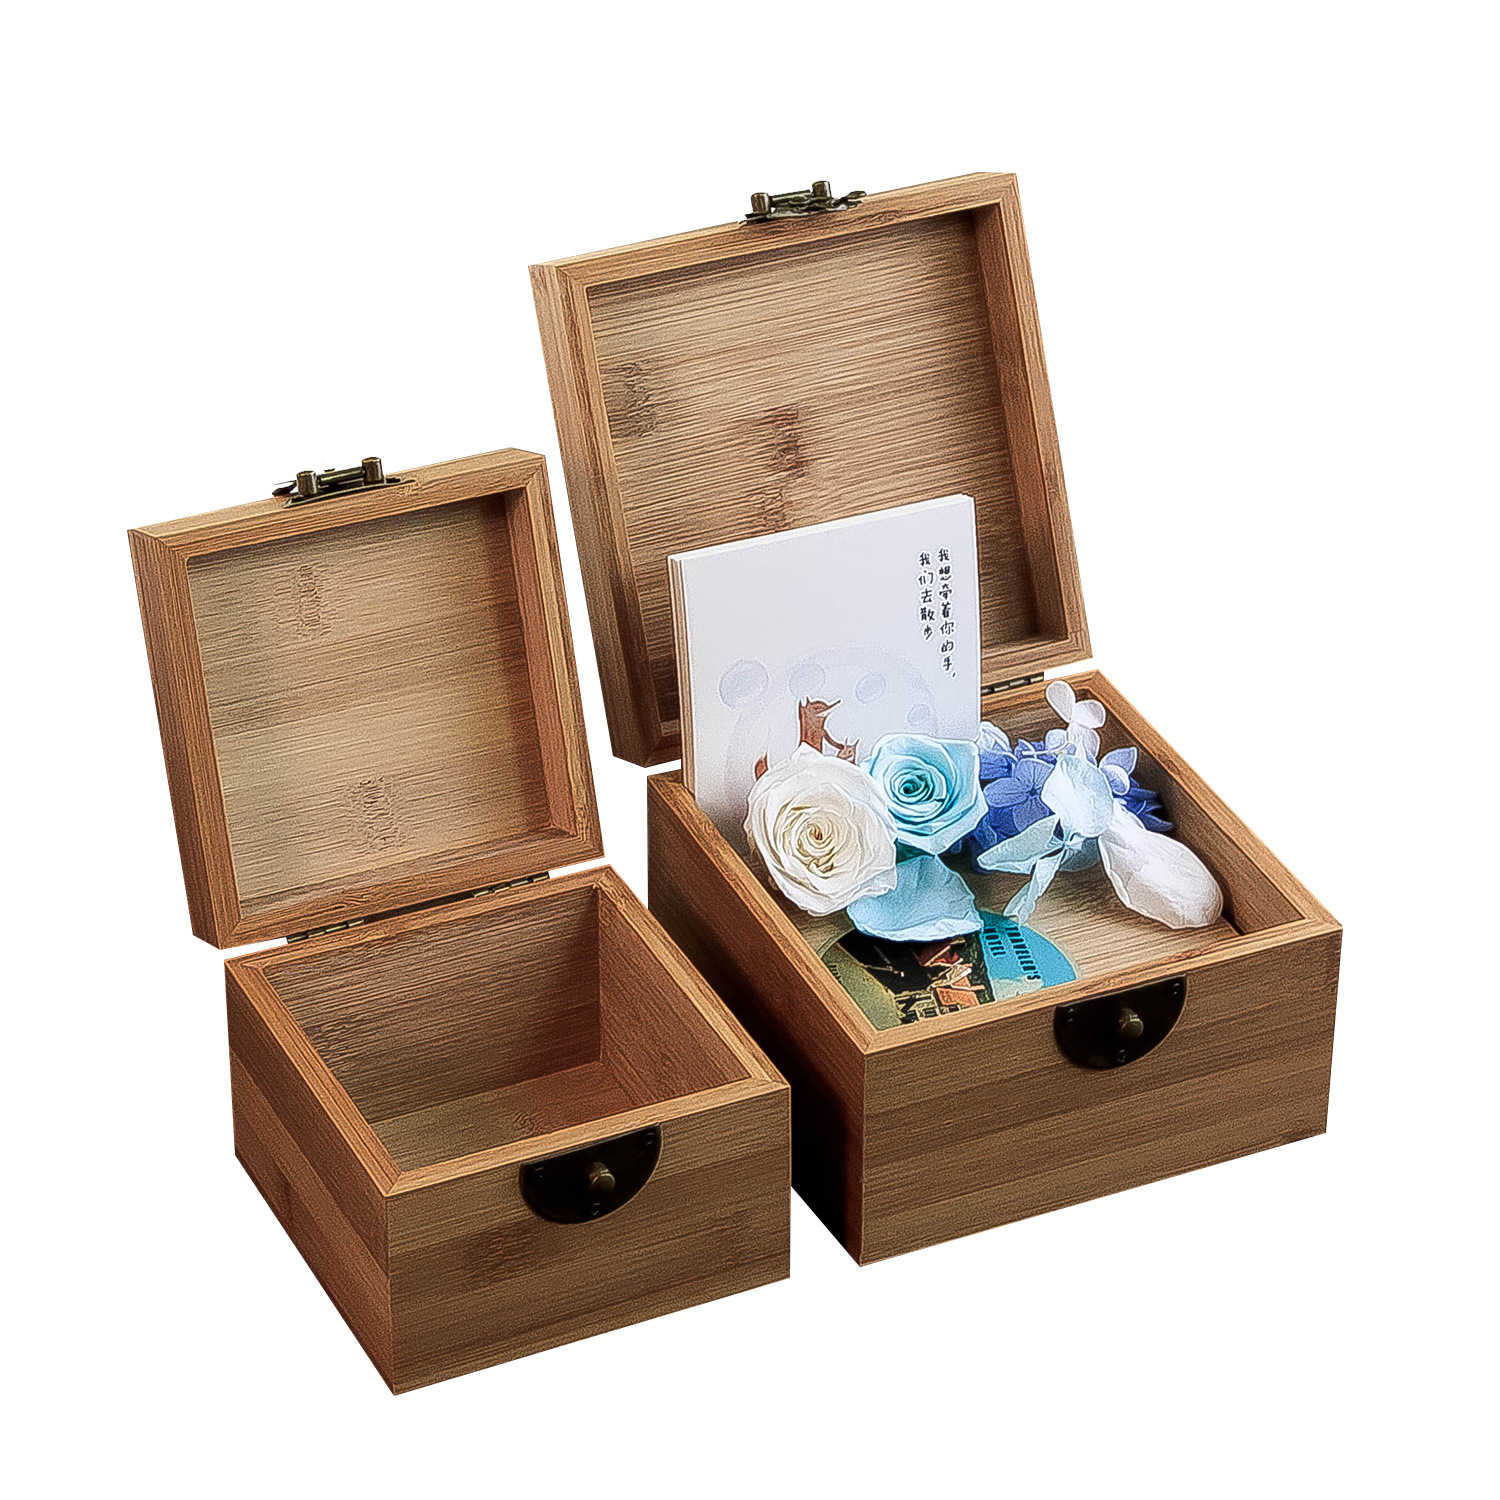 木竹质带锁木盒子正方形桌面收纳盒首饰储物方木盒包装竹小方盒